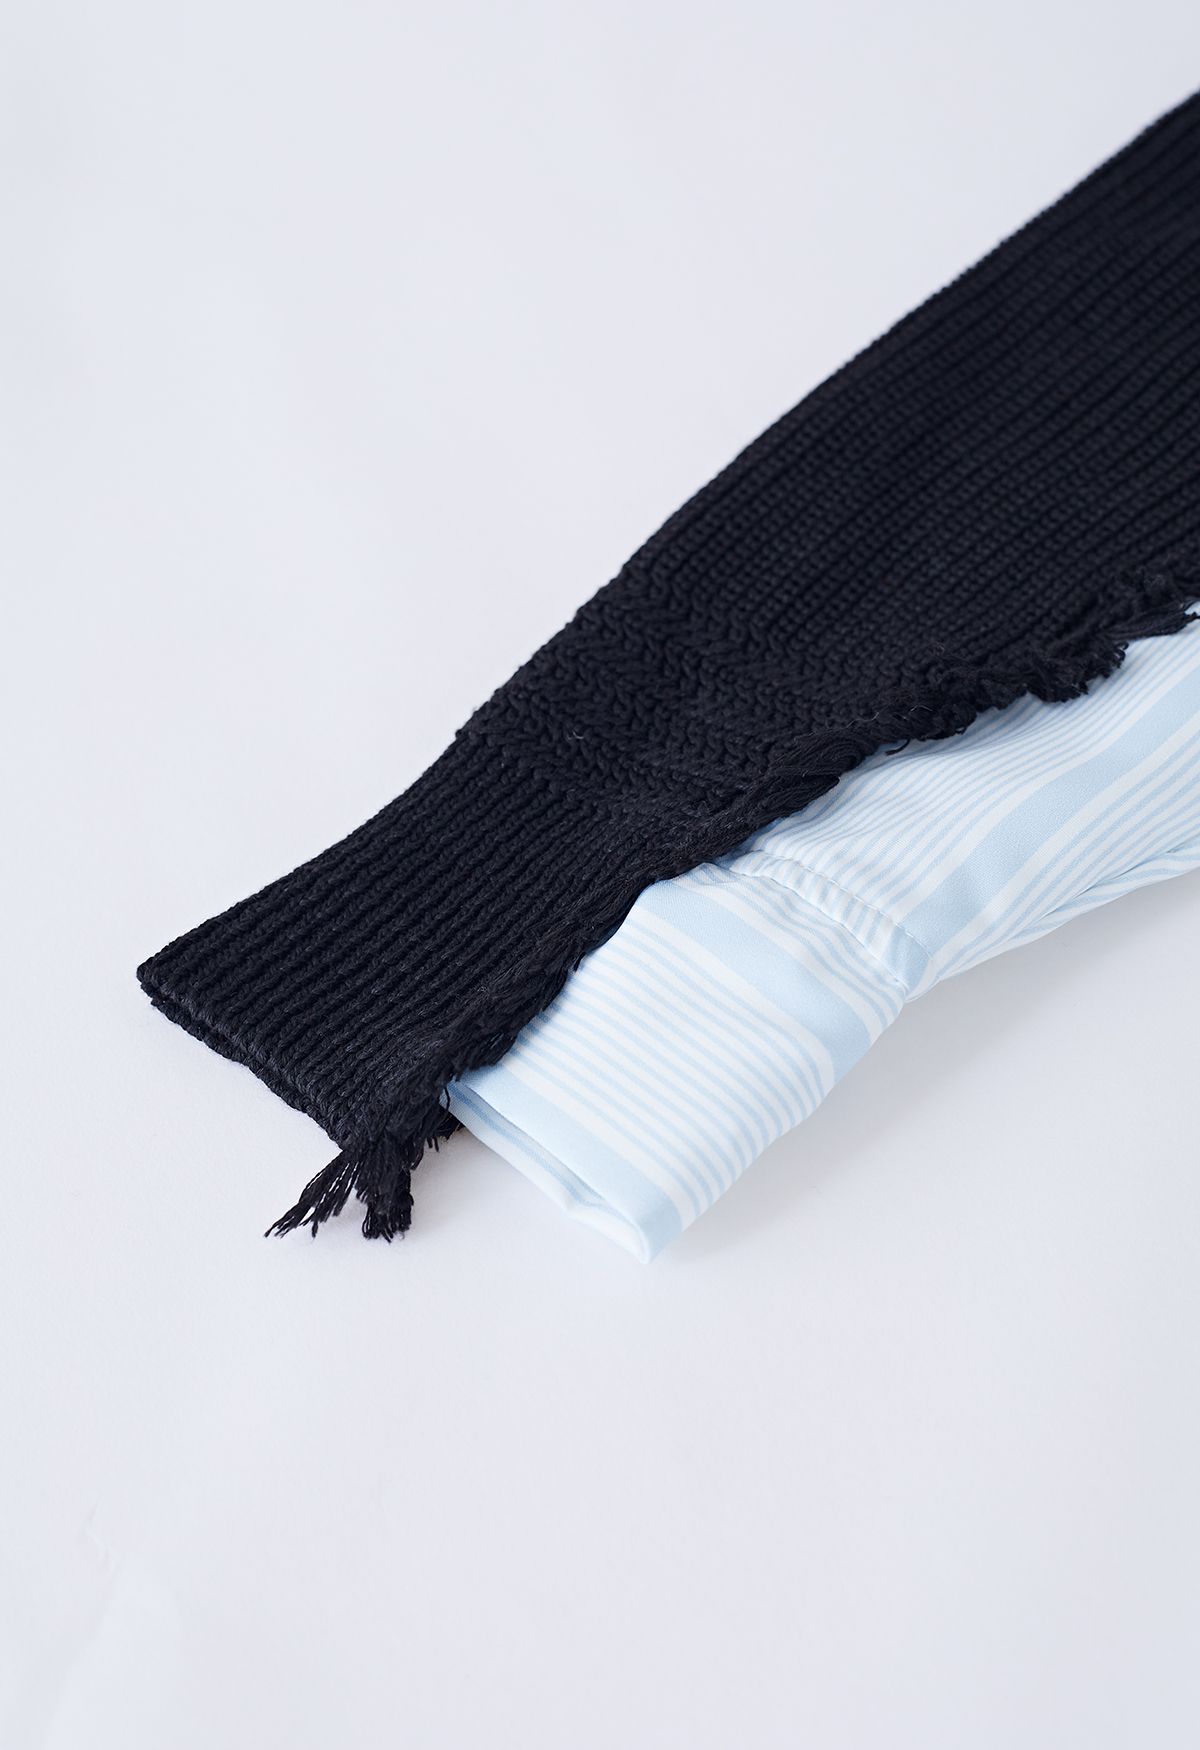 Chemise oversize rayée épissée en tricot avec détails effilochés en noir